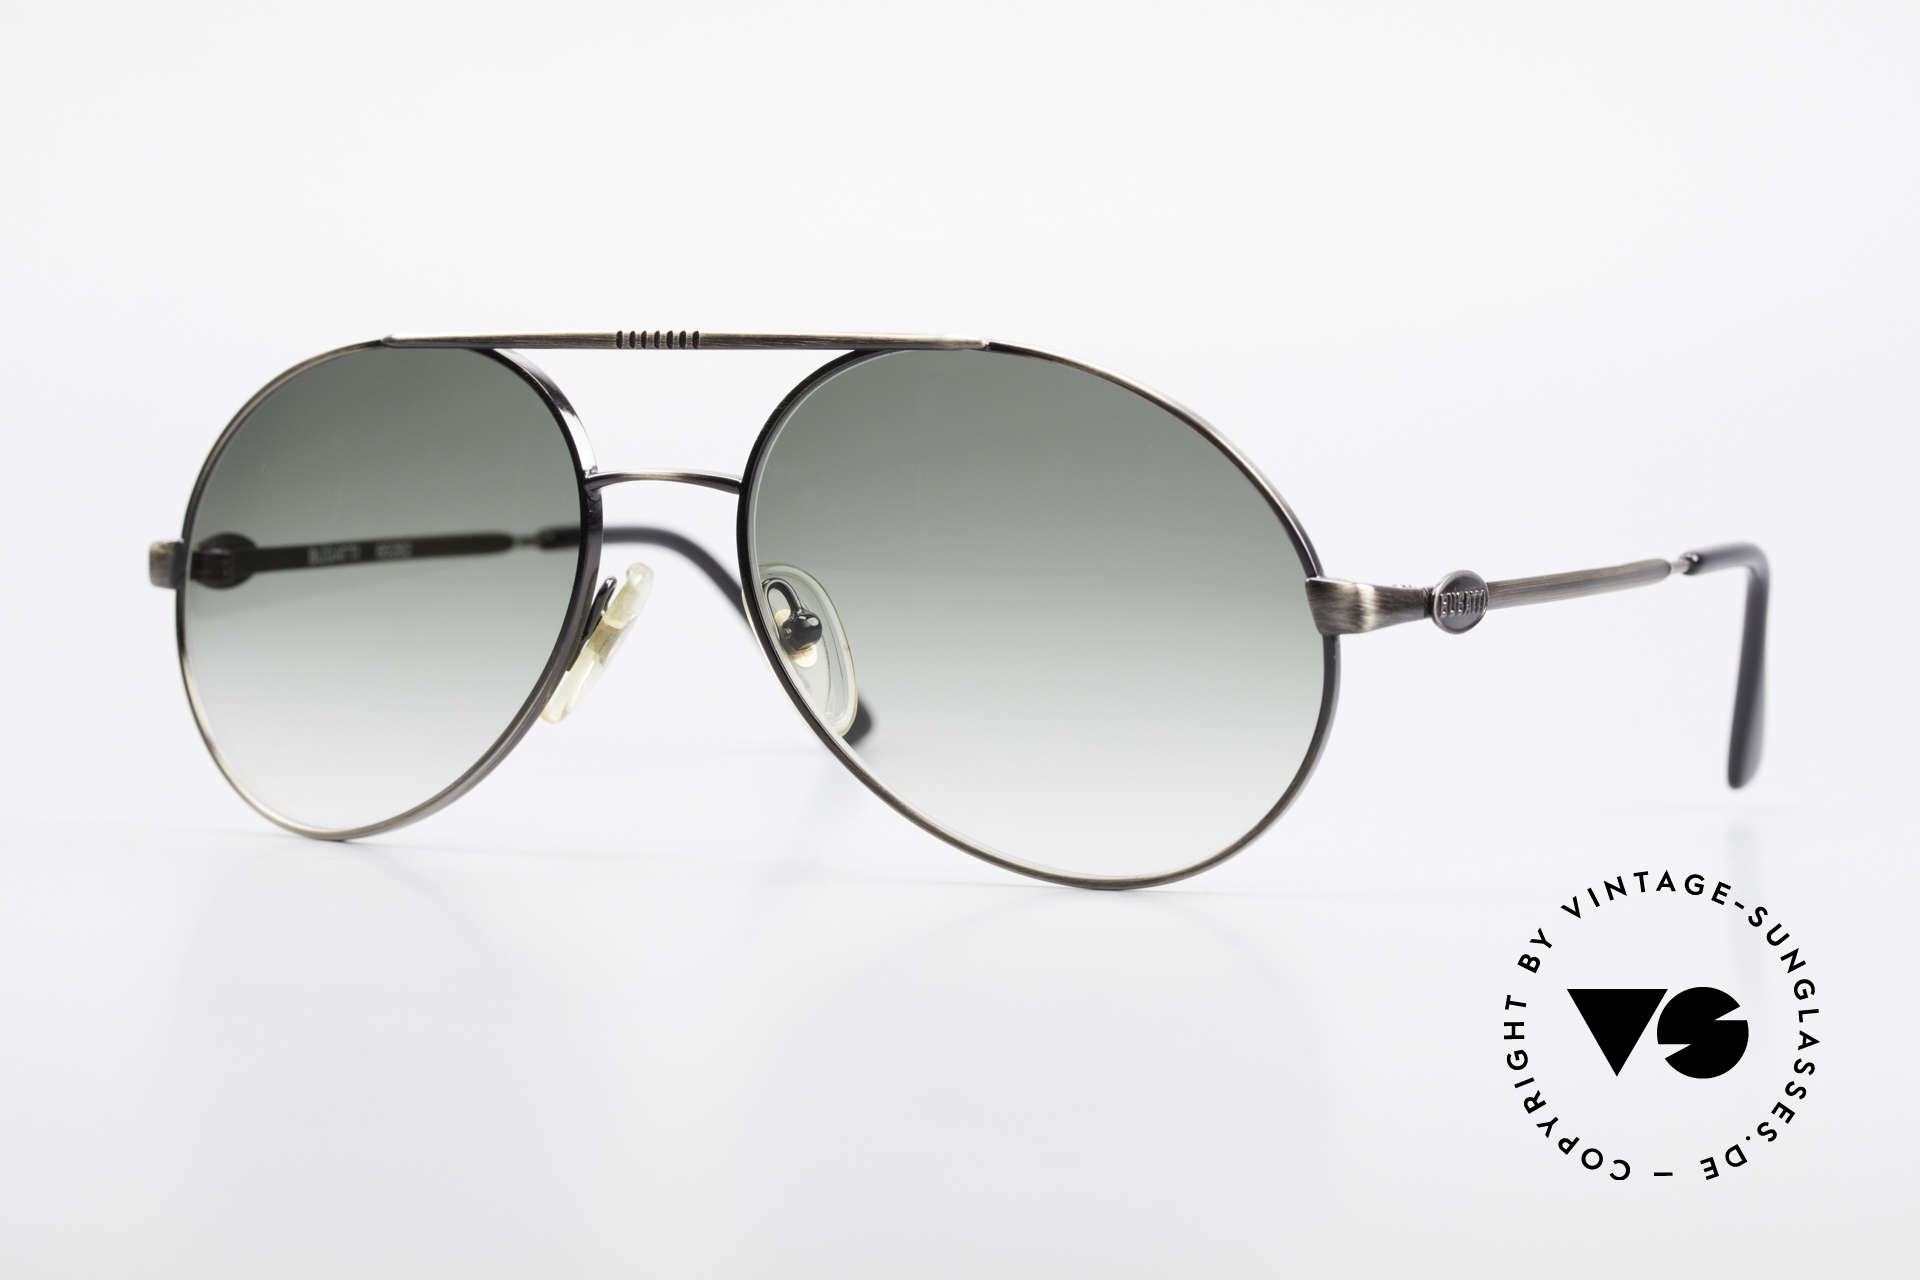 Bugatti 65282 Original 80's Shades No Retro, rare vintage Bugatti designer sunglasses from 1988, Made for Men